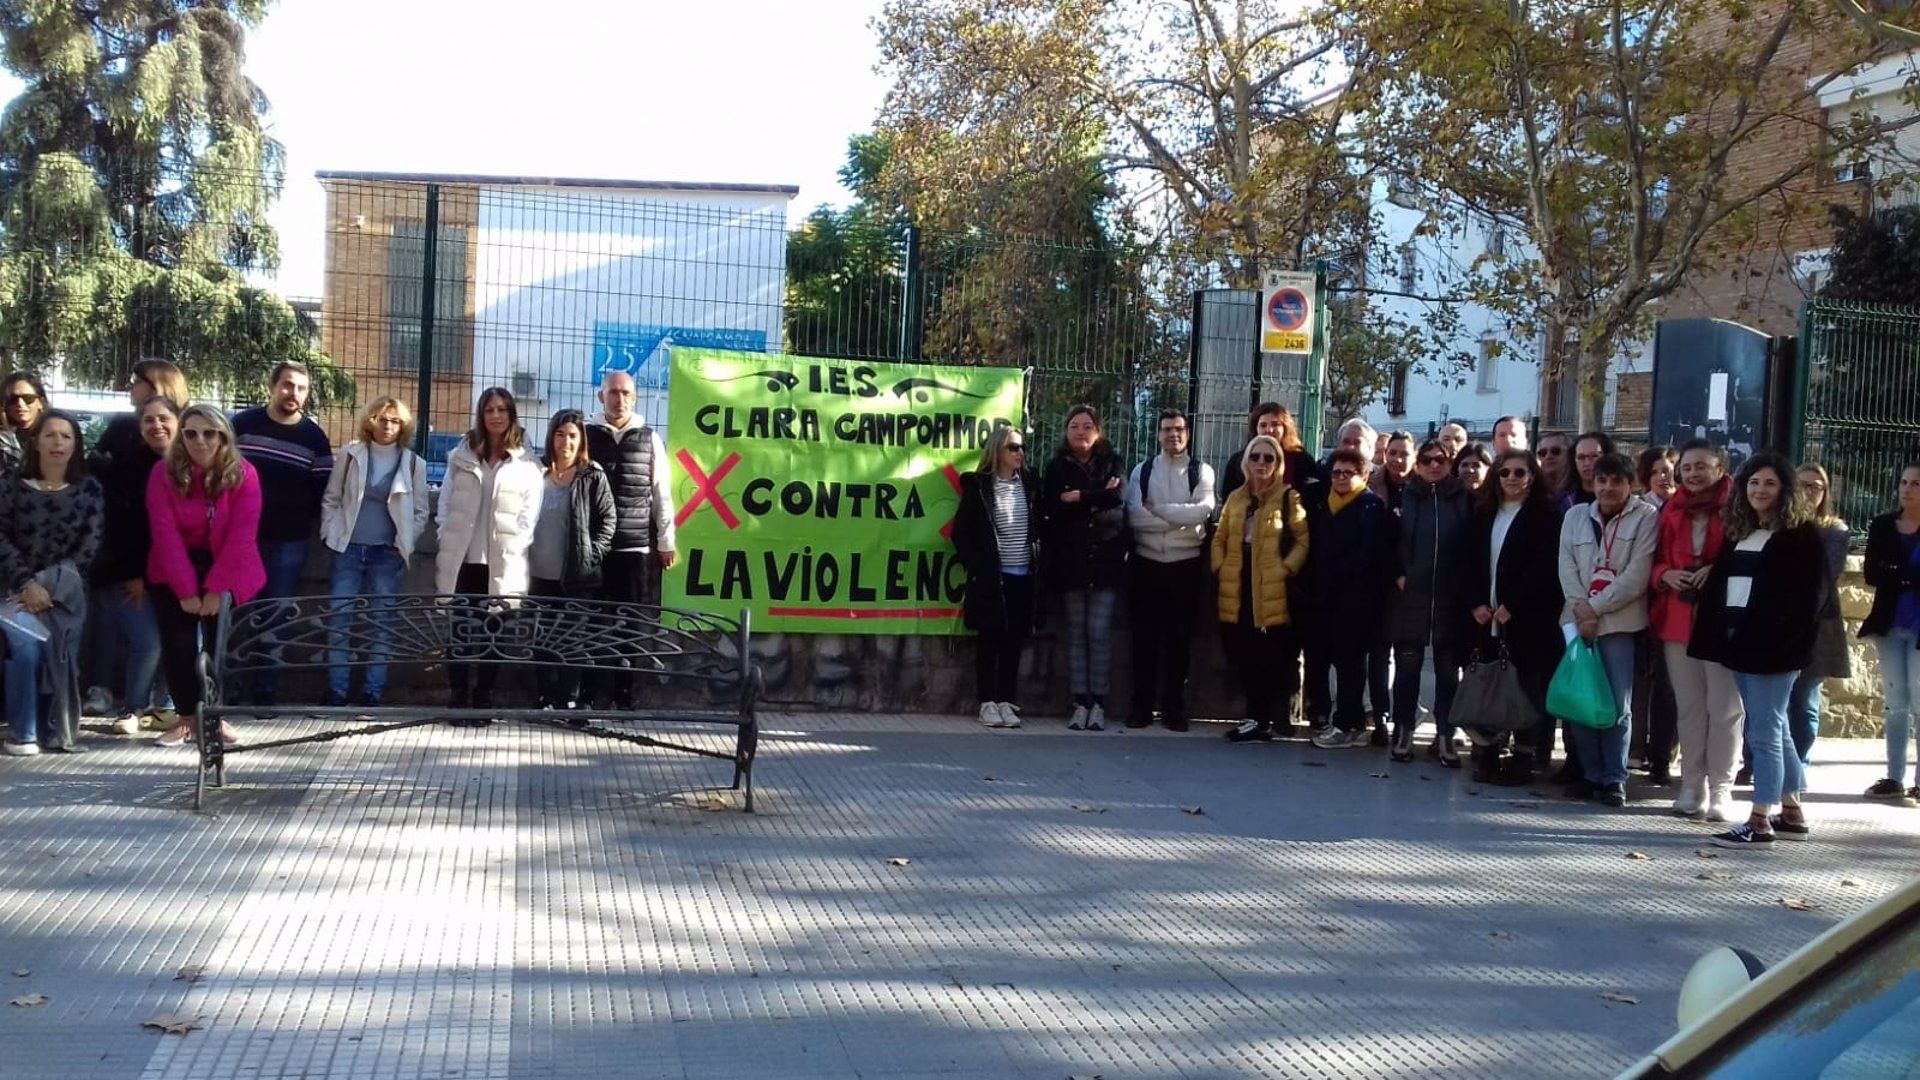 Concentración en apoyo de la docente del IES Clara Campoamor de Huelva, que ha sufrido amenazas y un intento de agresión.